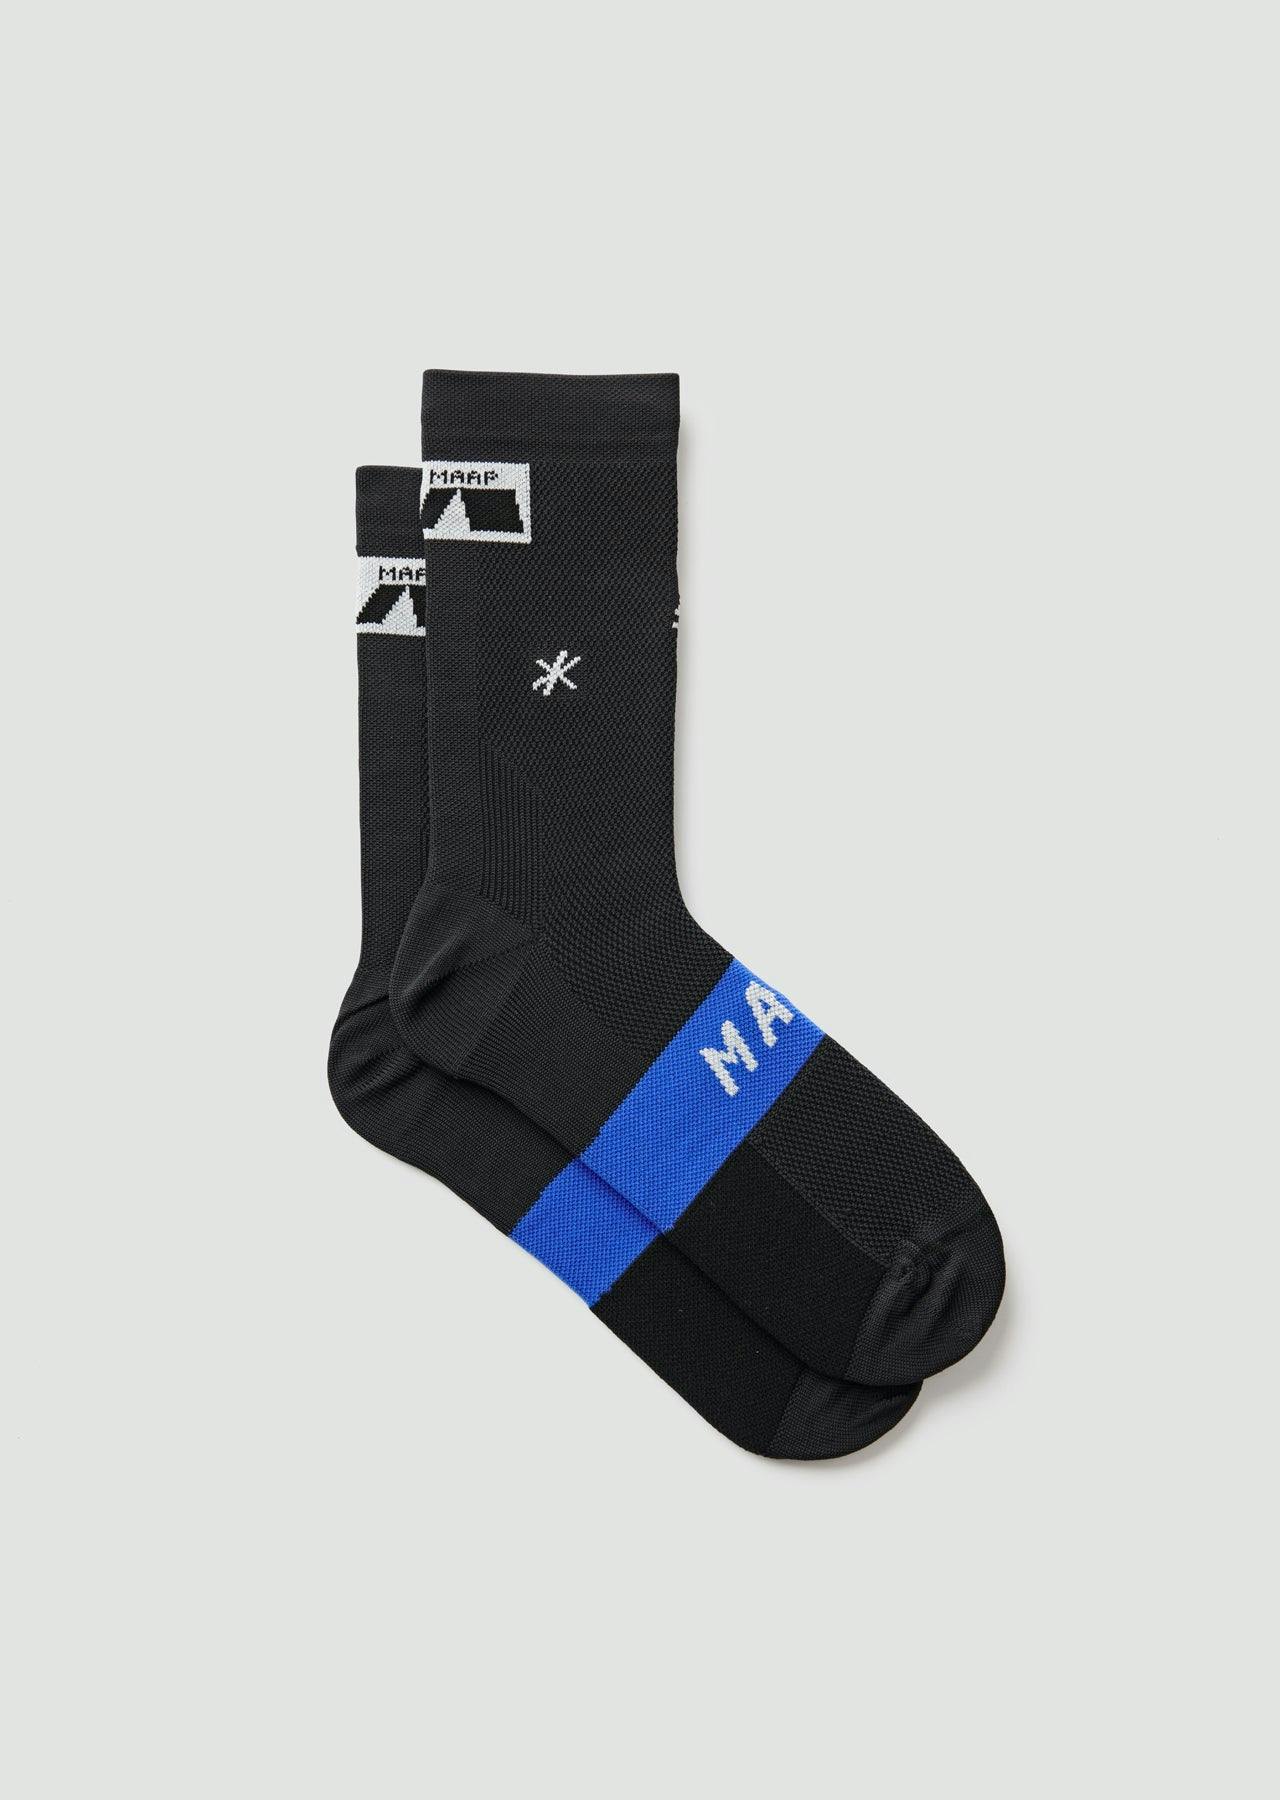 Axis Socks